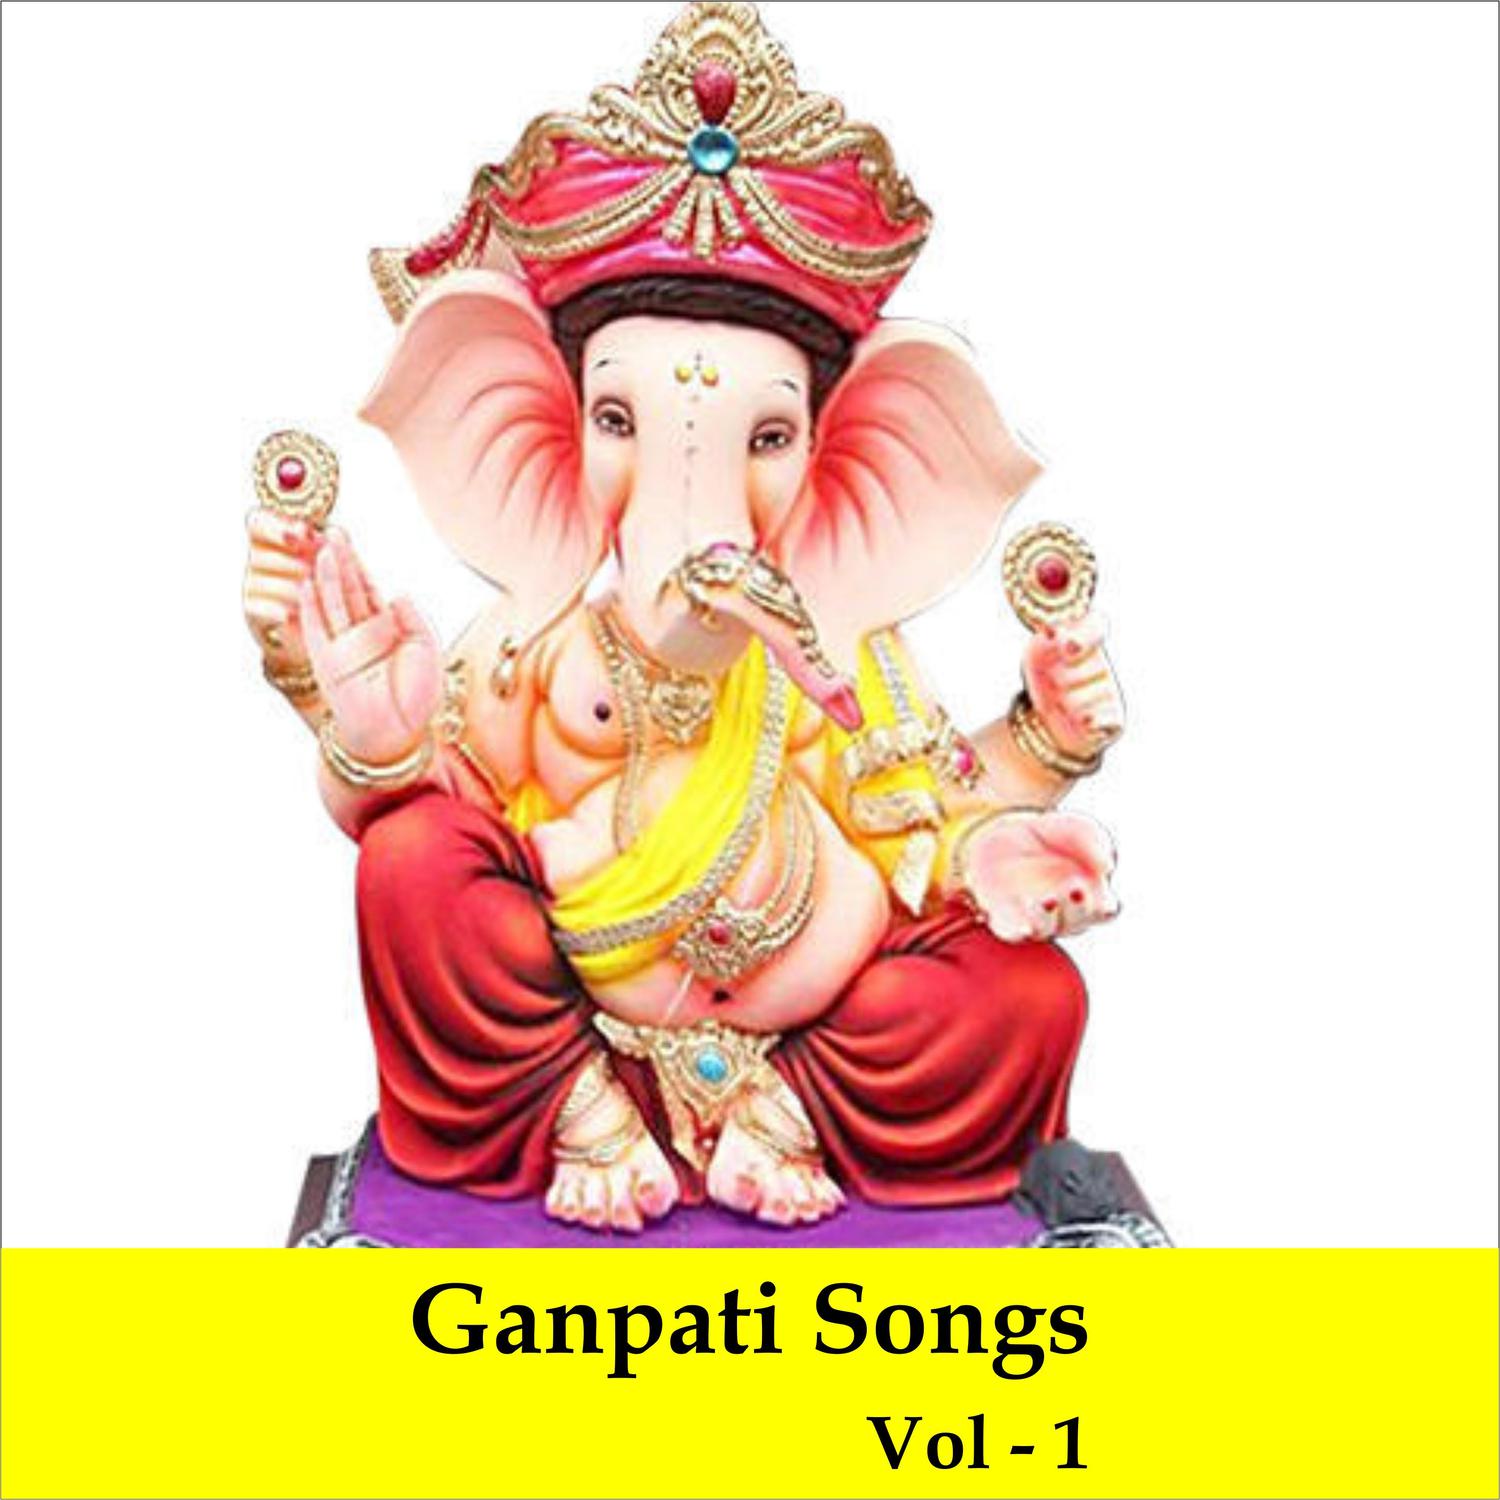 Ganpati Songs, Vol. 1